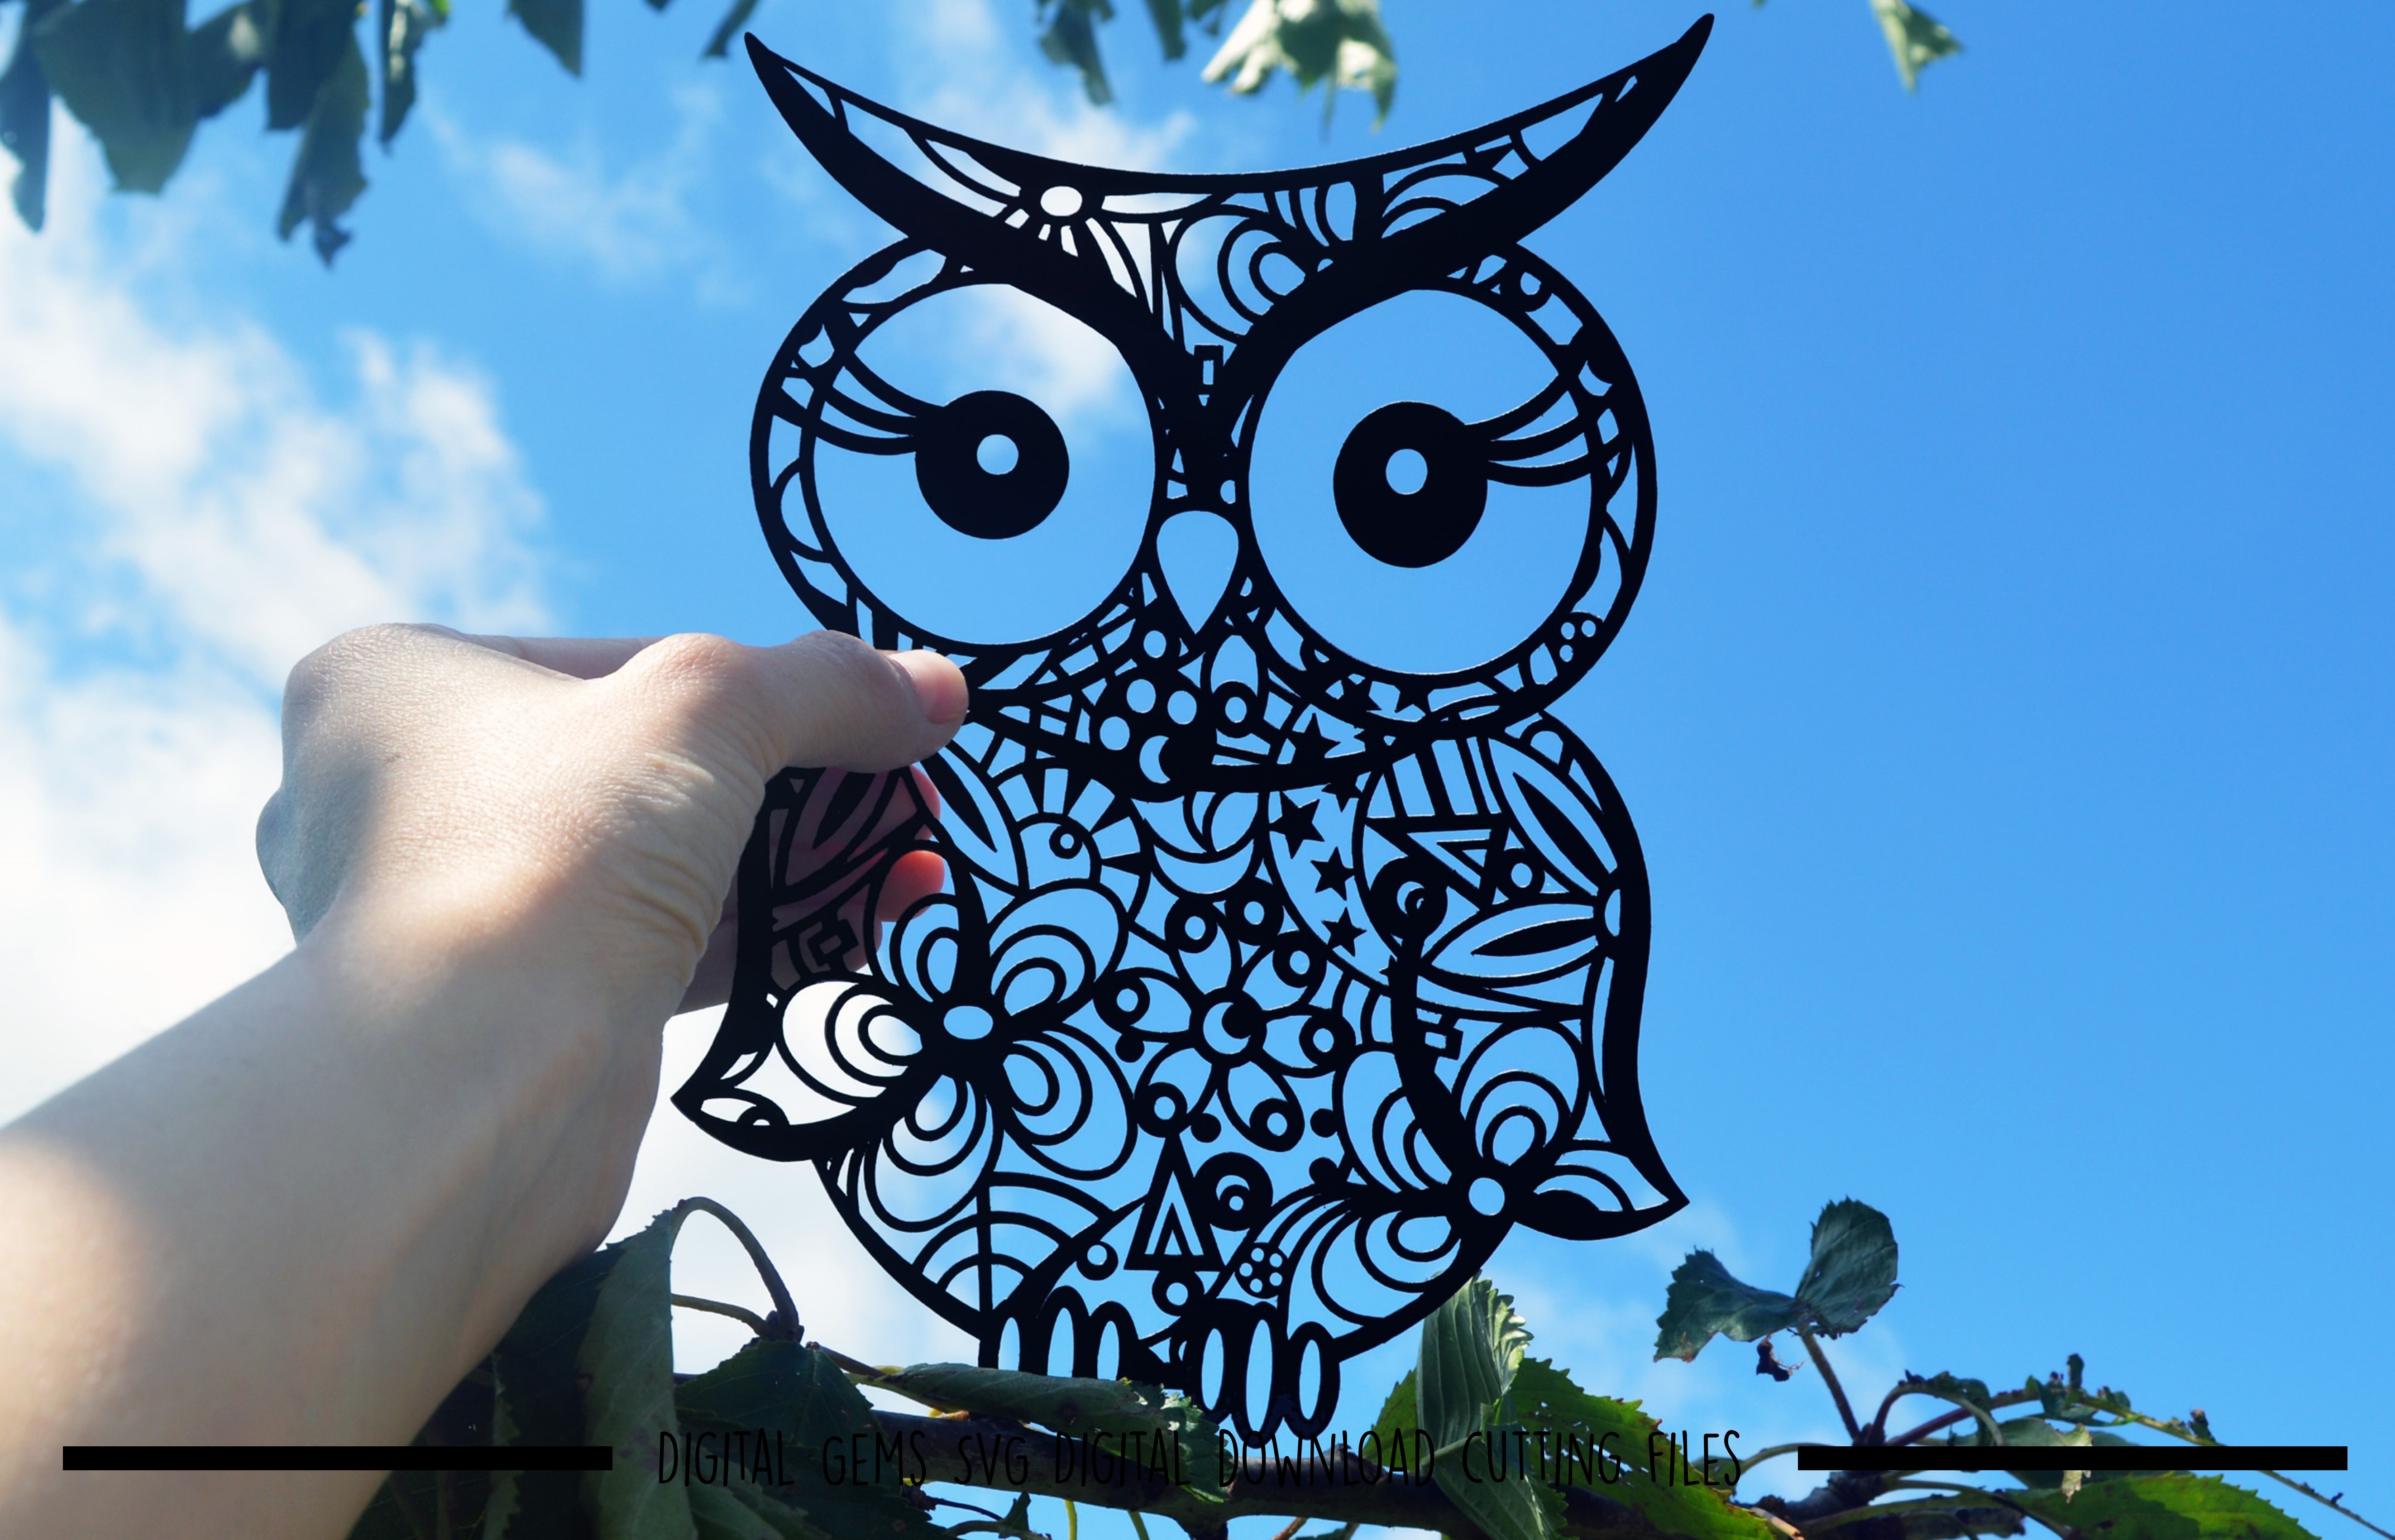 Download Owl Paper Cut SVG / DXF / EPS File (26456) | SVGs | Design Bundles